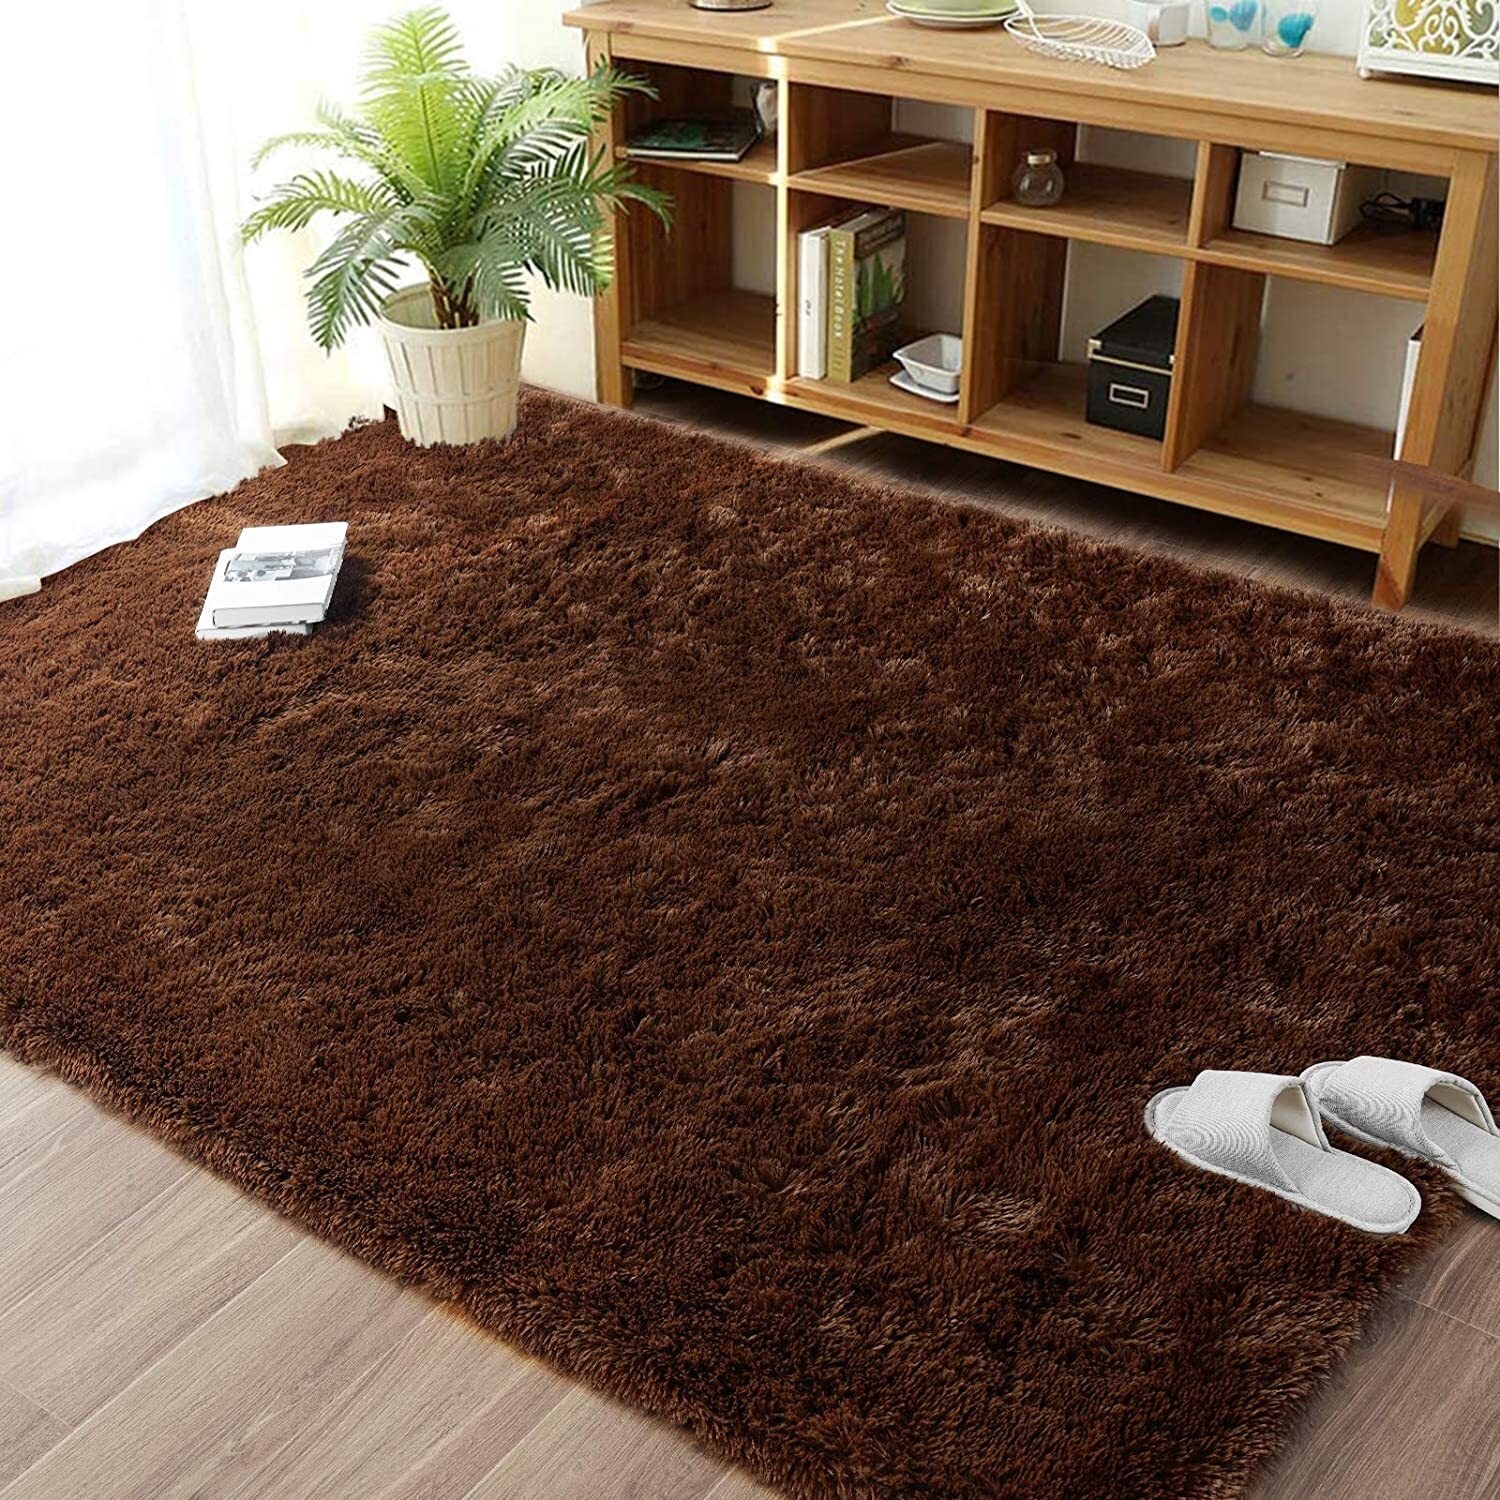 Soft Shag Rug Carpet Mat (Chocolate, 160 x 120)